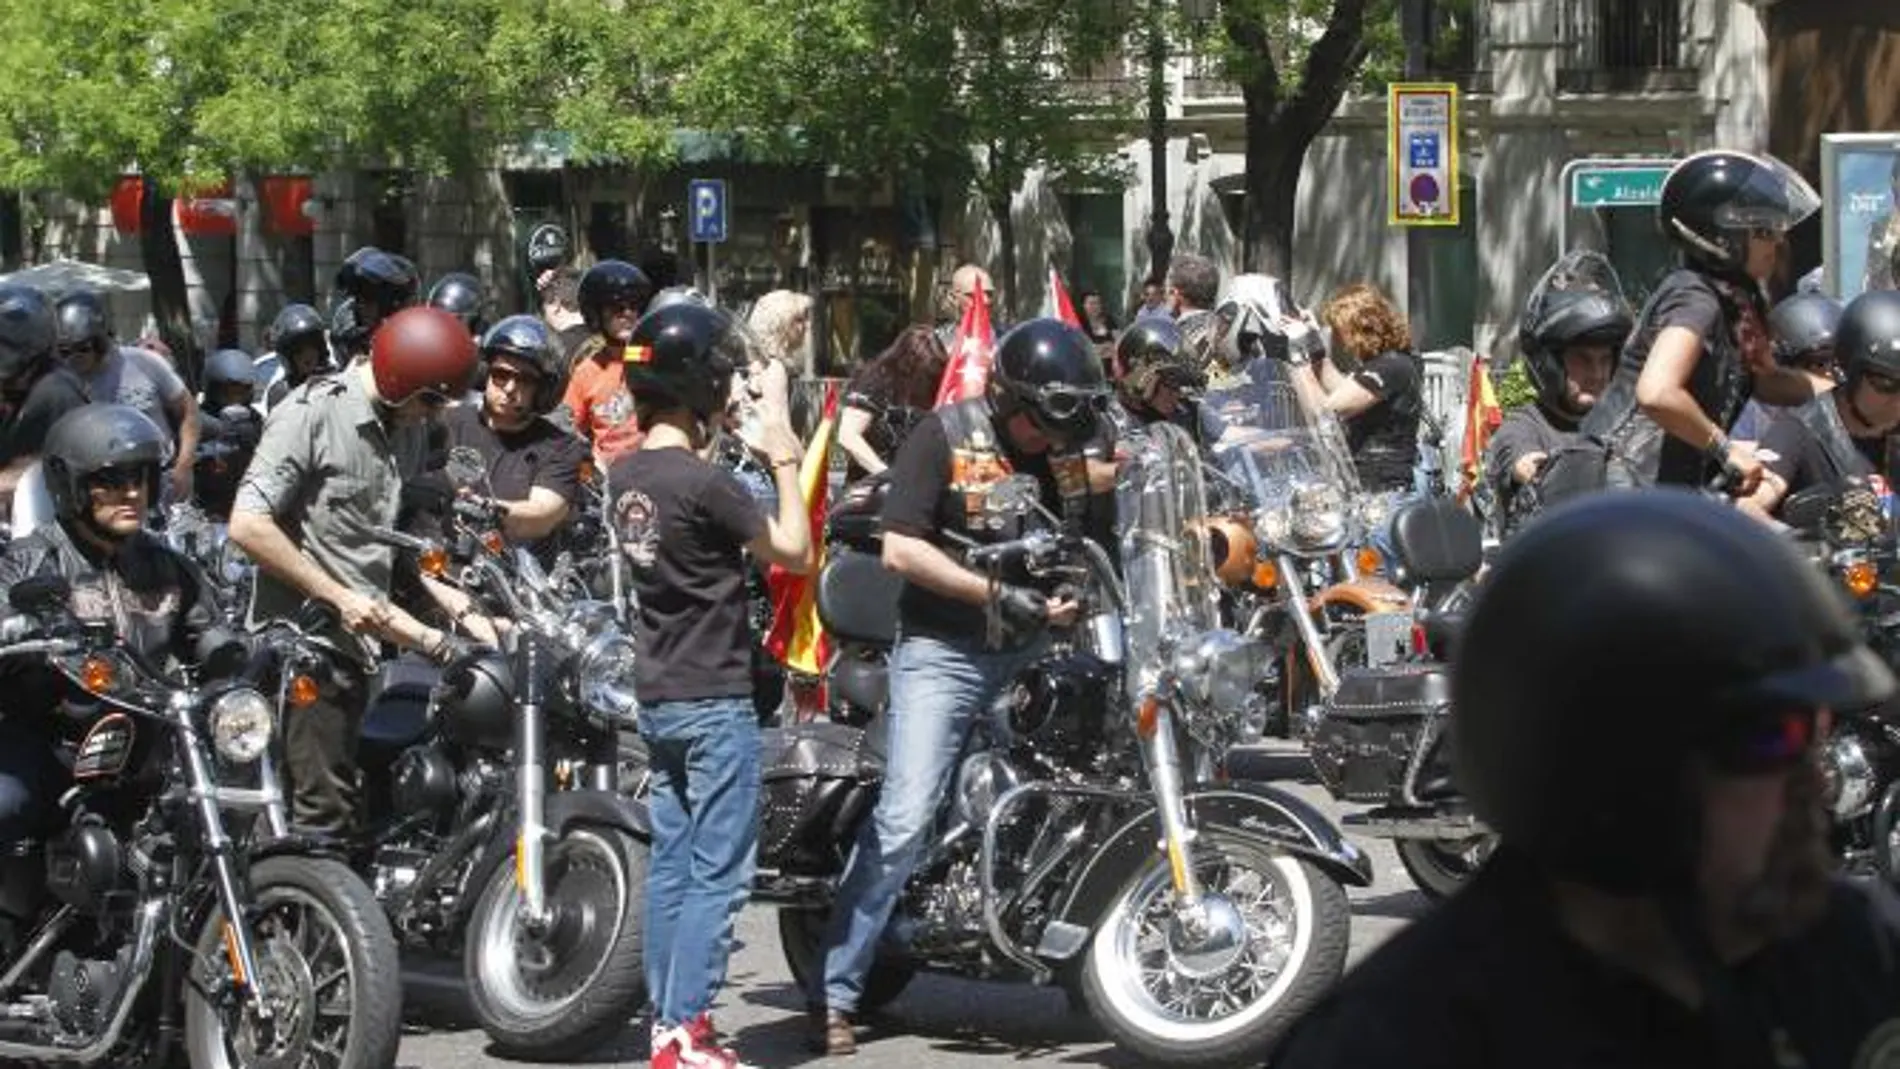 Centenares de Harley-Davidson desfilan por las calles de Madrid